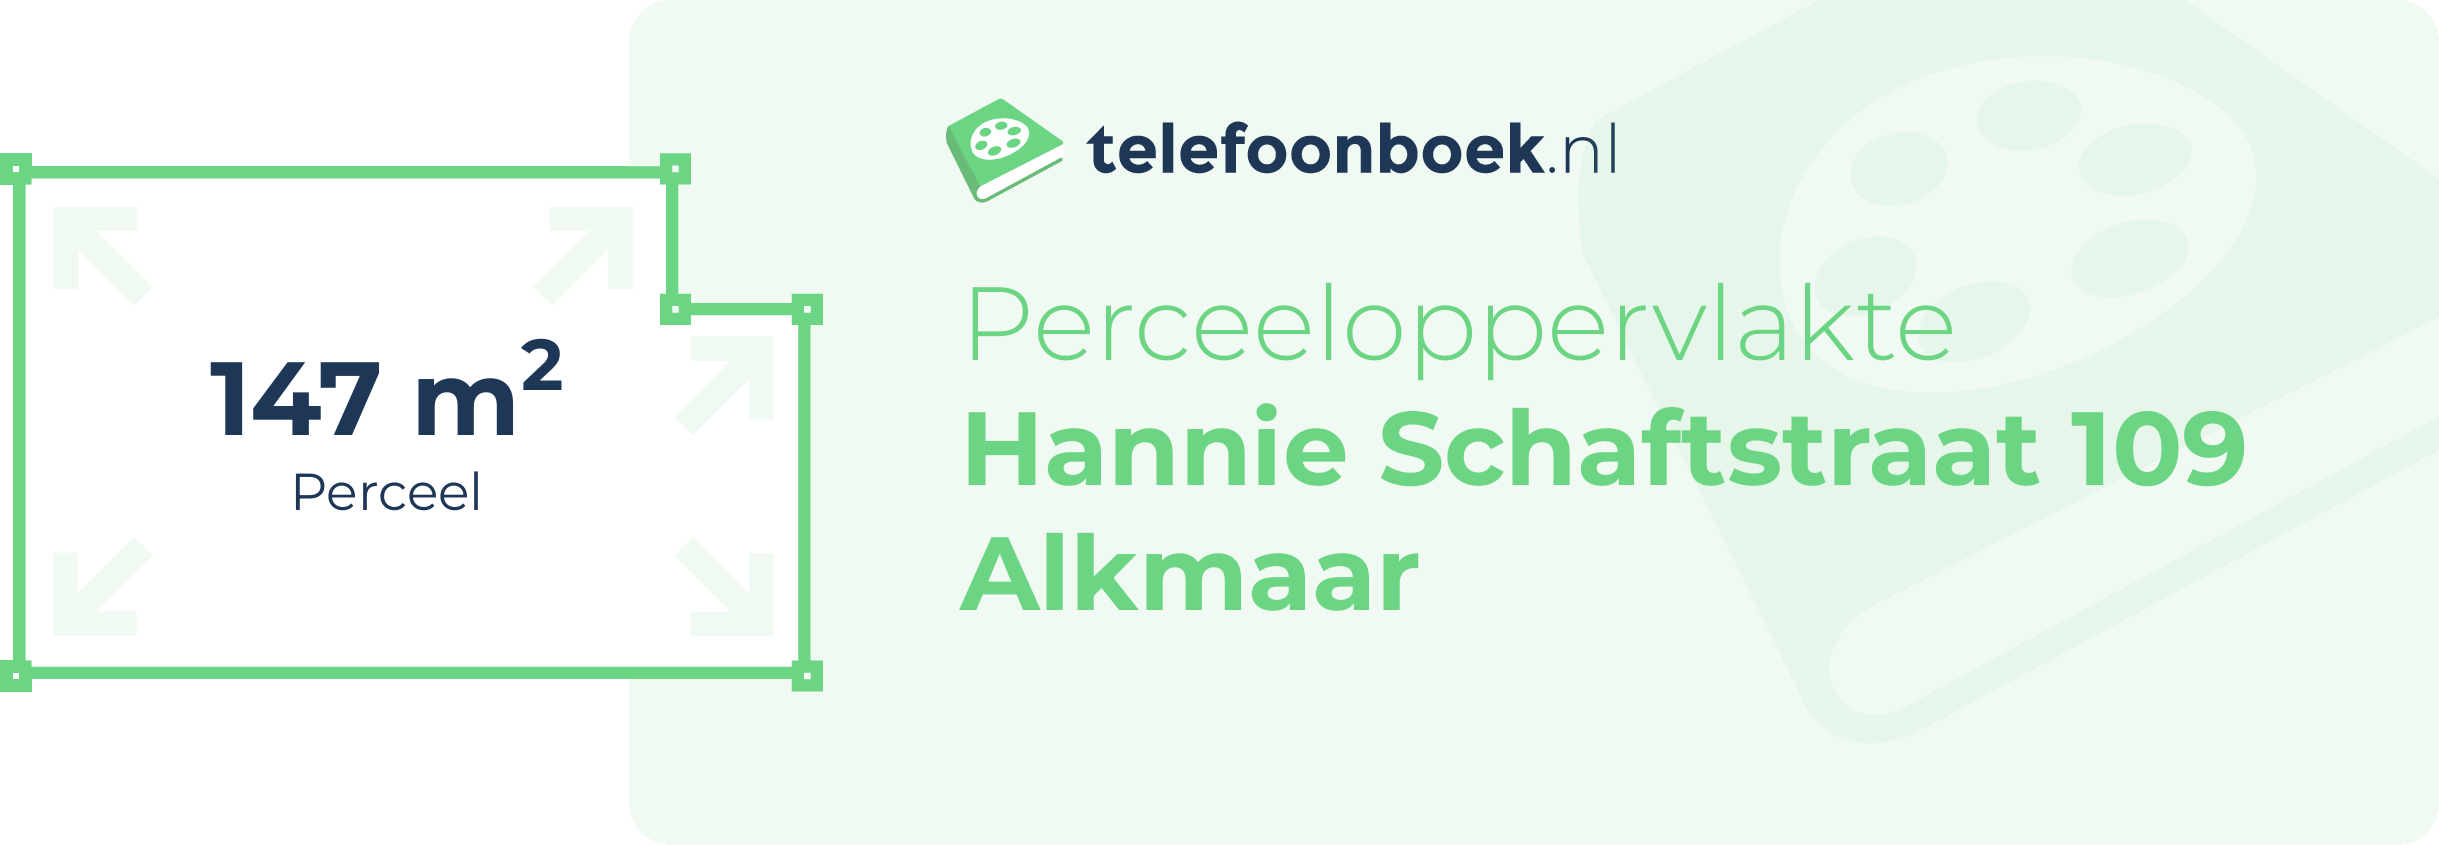 Perceeloppervlakte Hannie Schaftstraat 109 Alkmaar